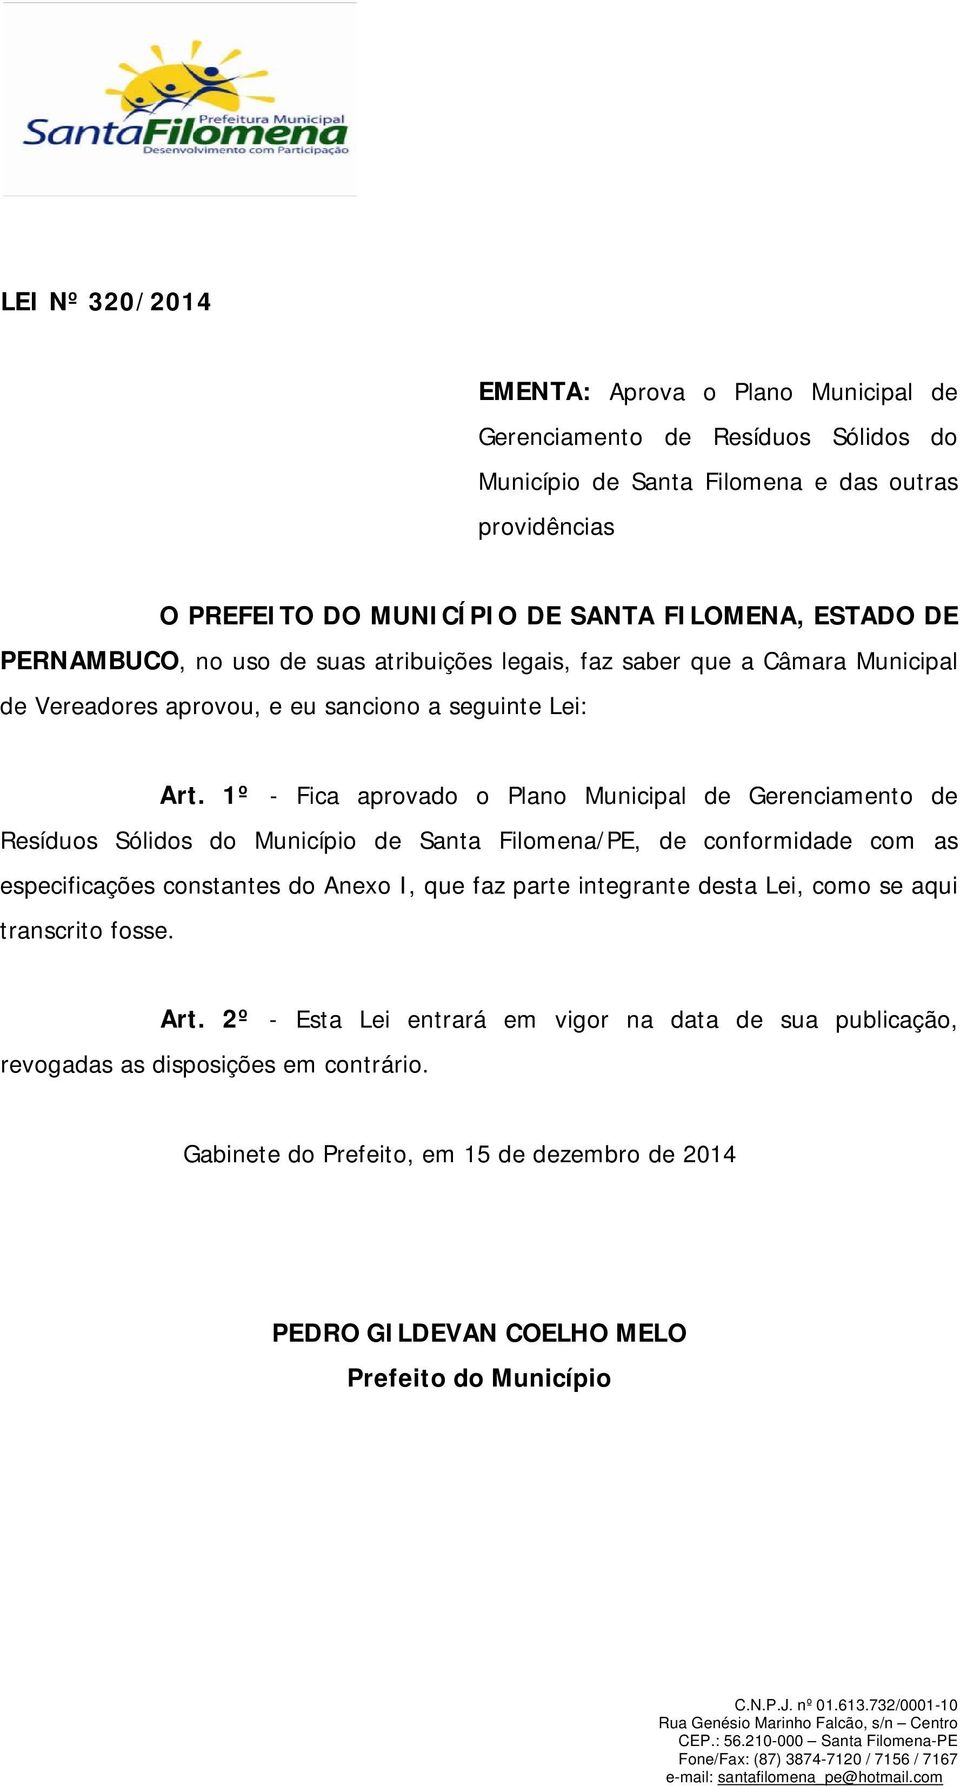 1º - Fica aprovado o Plano Municipal de Gerenciamento de Resíduos Sólidos do Município de Santa Filomena/PE, de conformidade com as especificações constantes do Anexo I, que faz parte